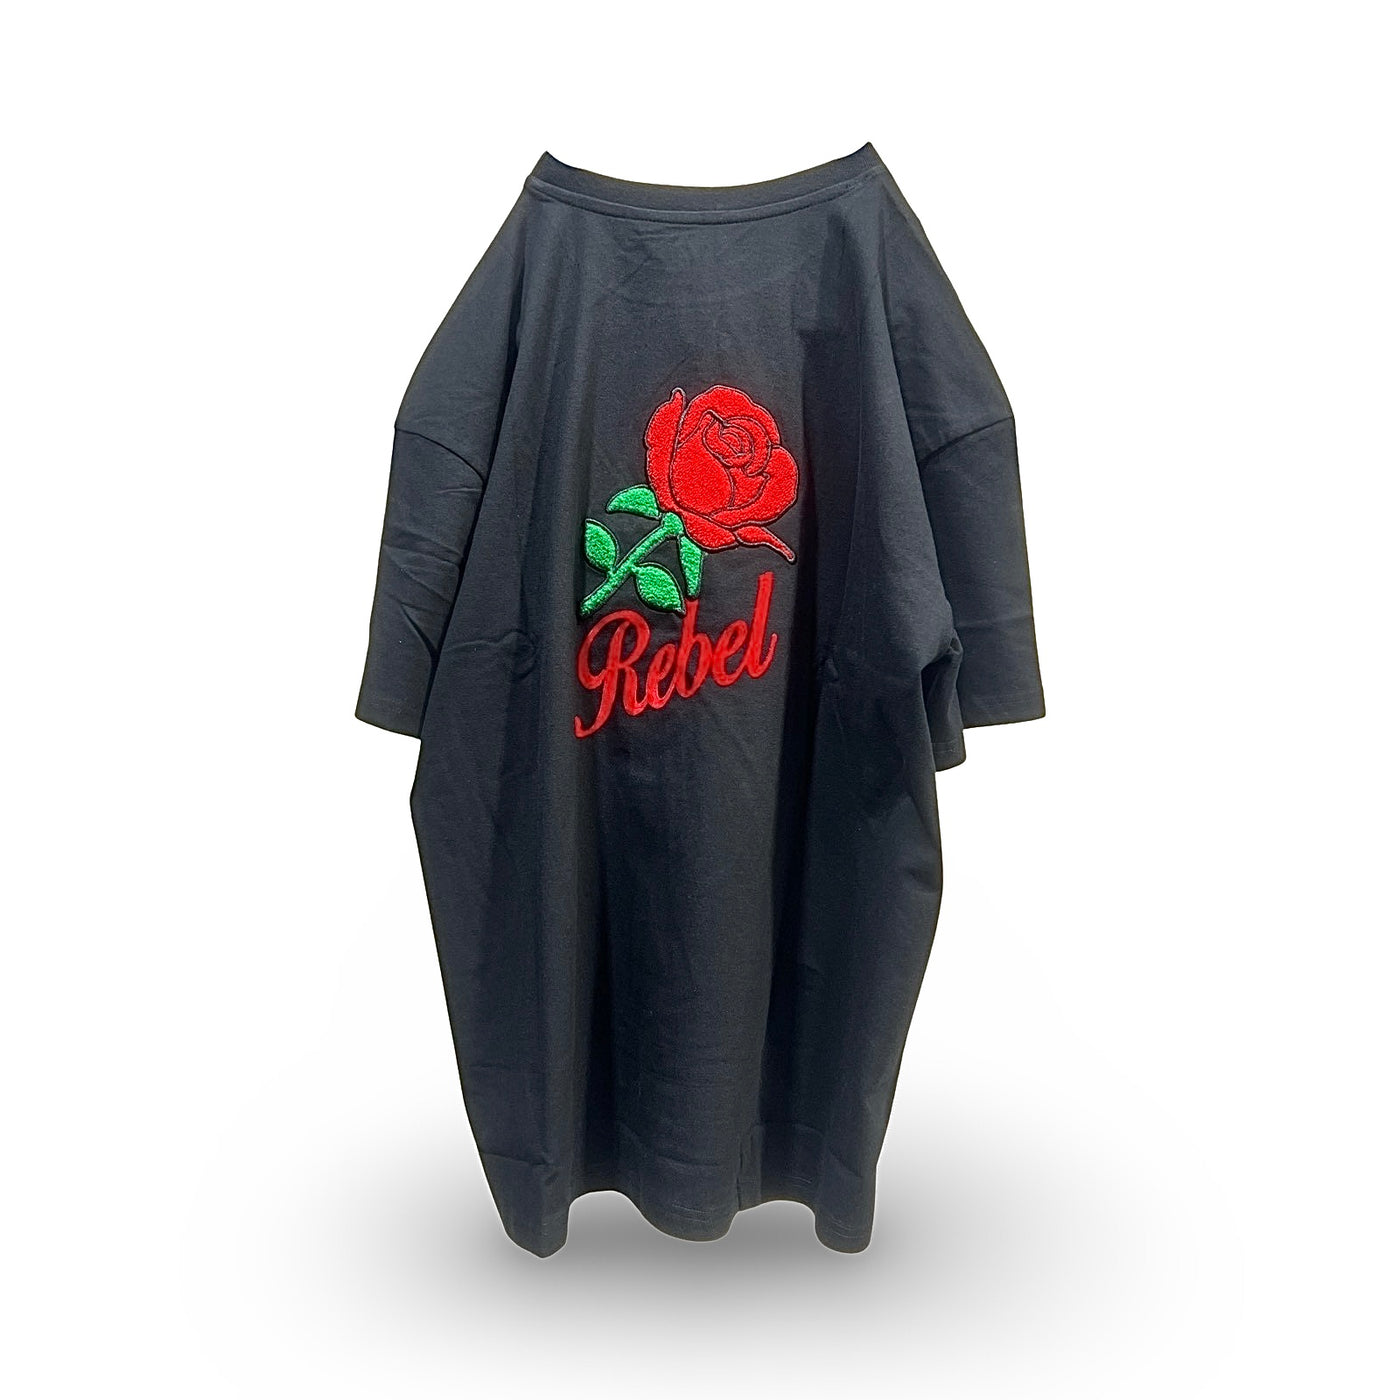 631-111 R3bel Rose Chenille Black T-Shirt